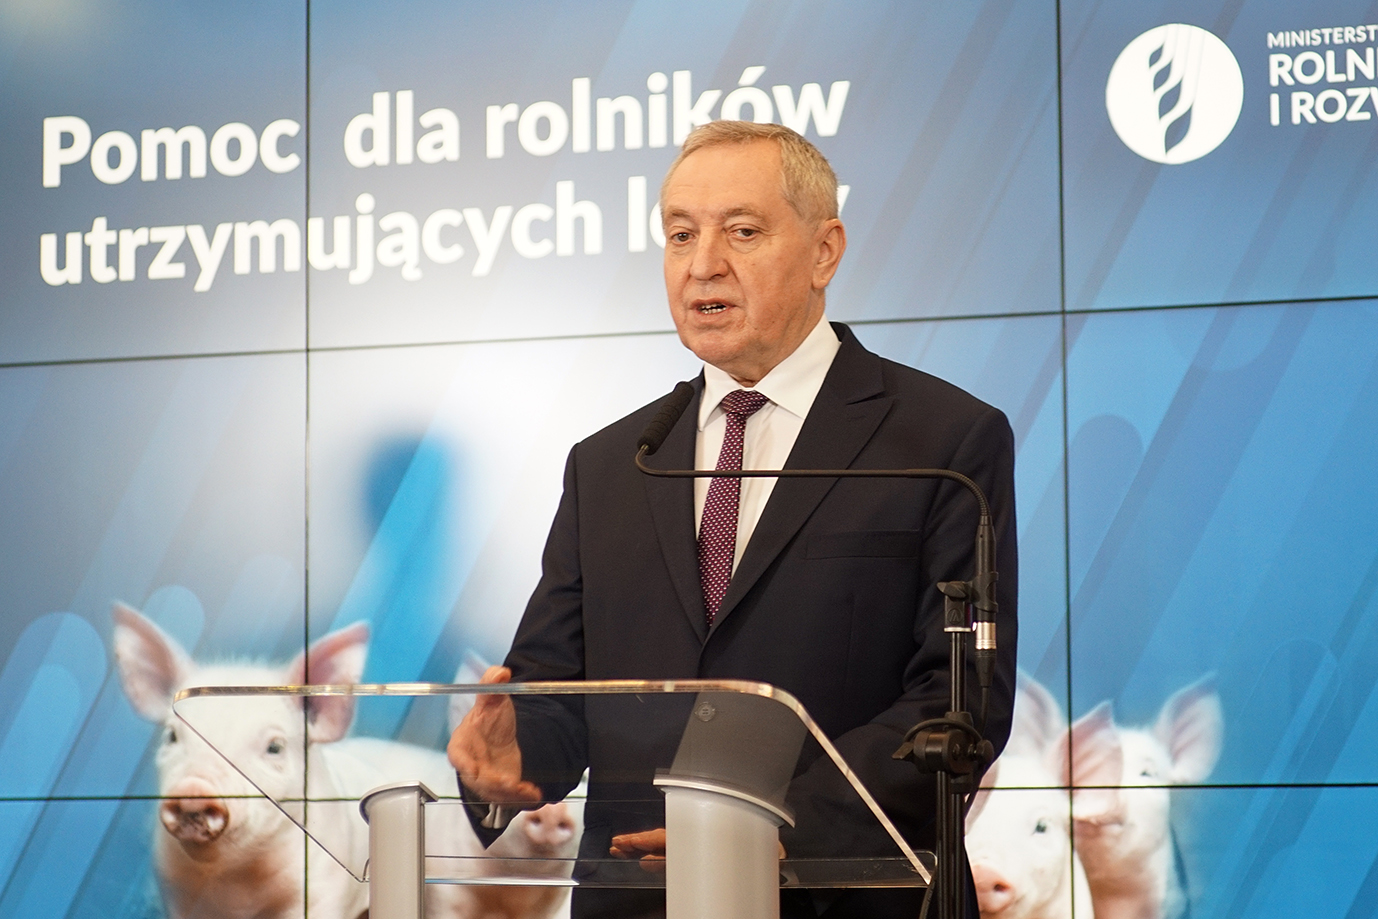 Wicepremier Henryk Kowalczyk podczas wystąpienia na konferencji (fot. MRiRW)